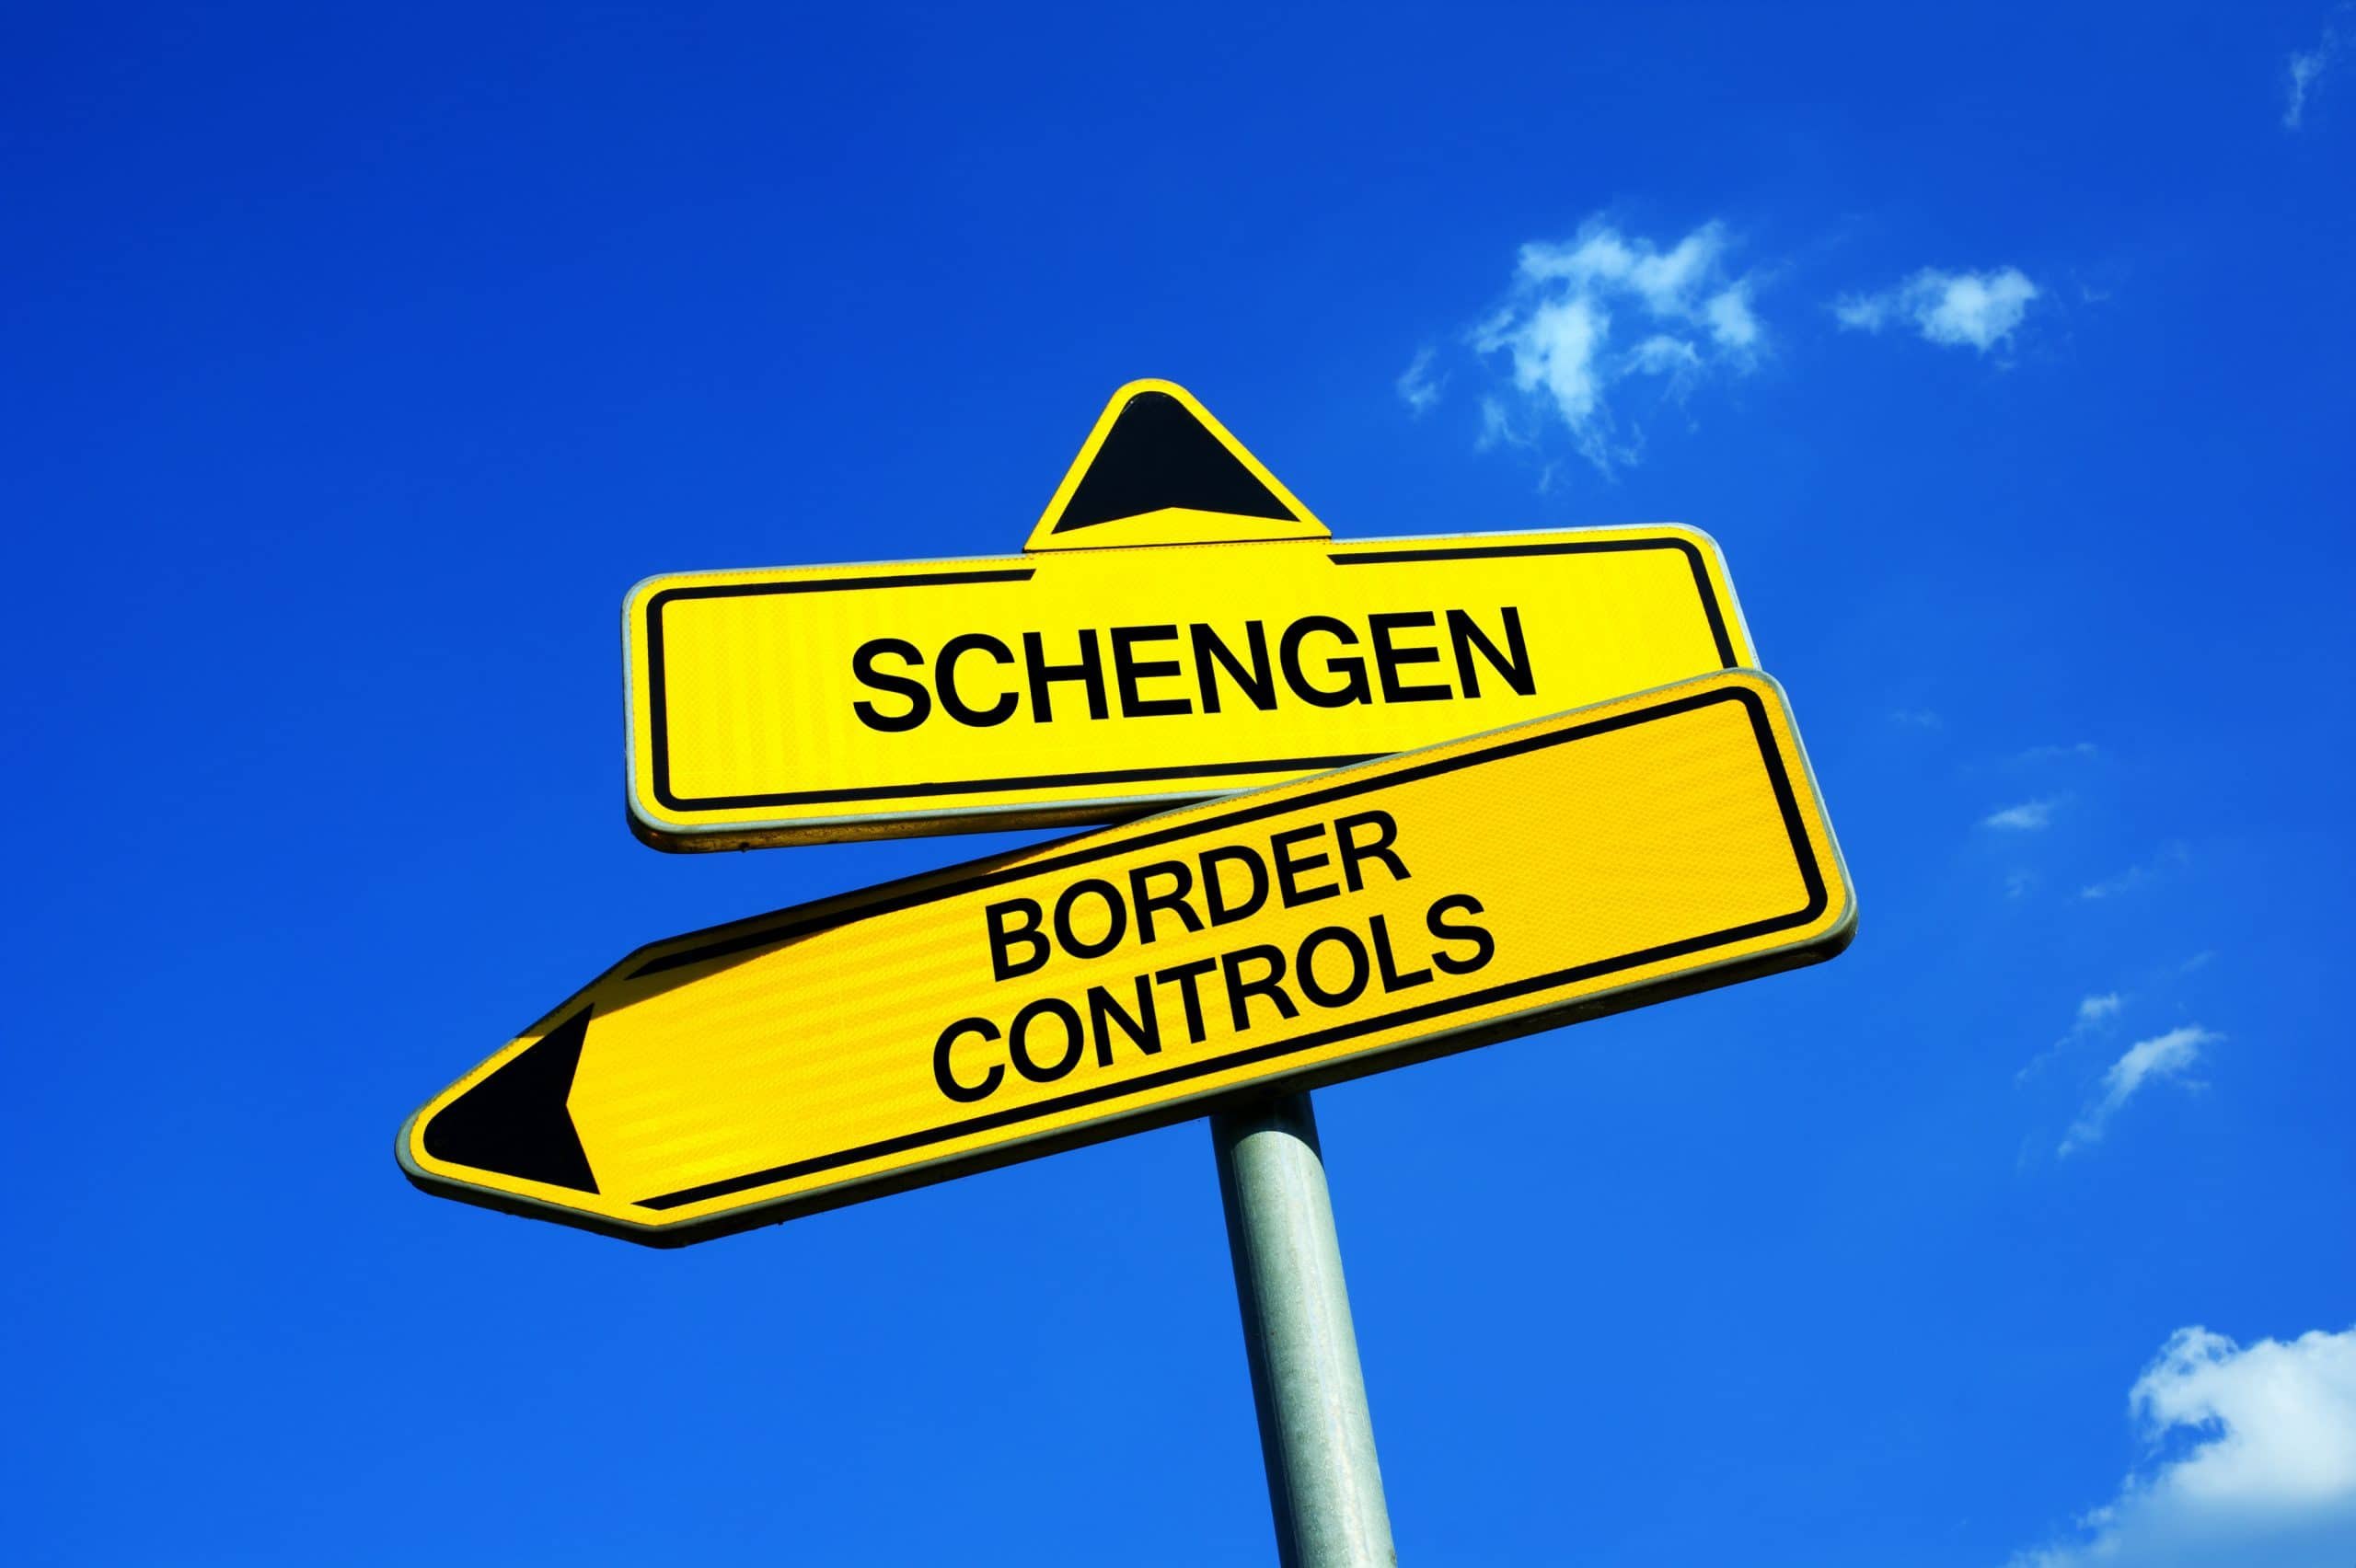 Hogy is állunk most a schengeni csatlakozással?